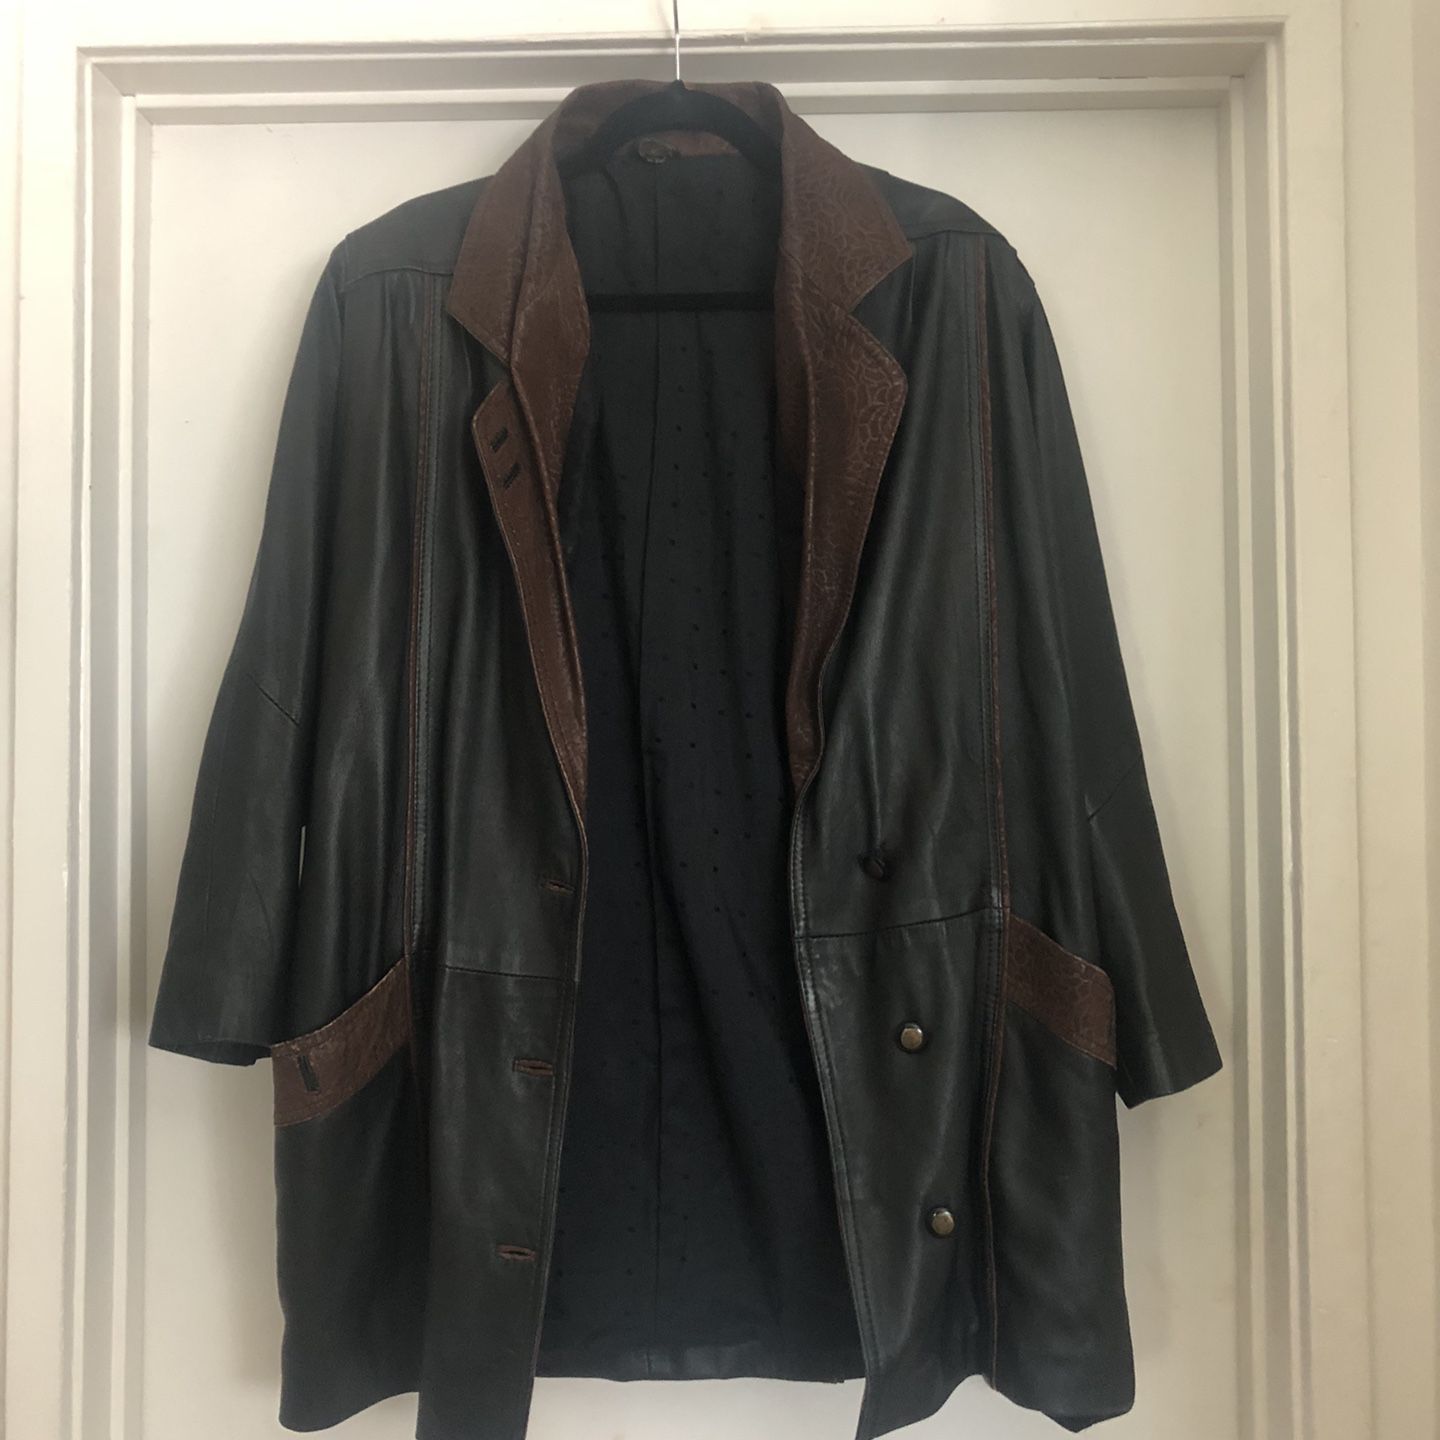 Vintage Oversized Leather Jacket